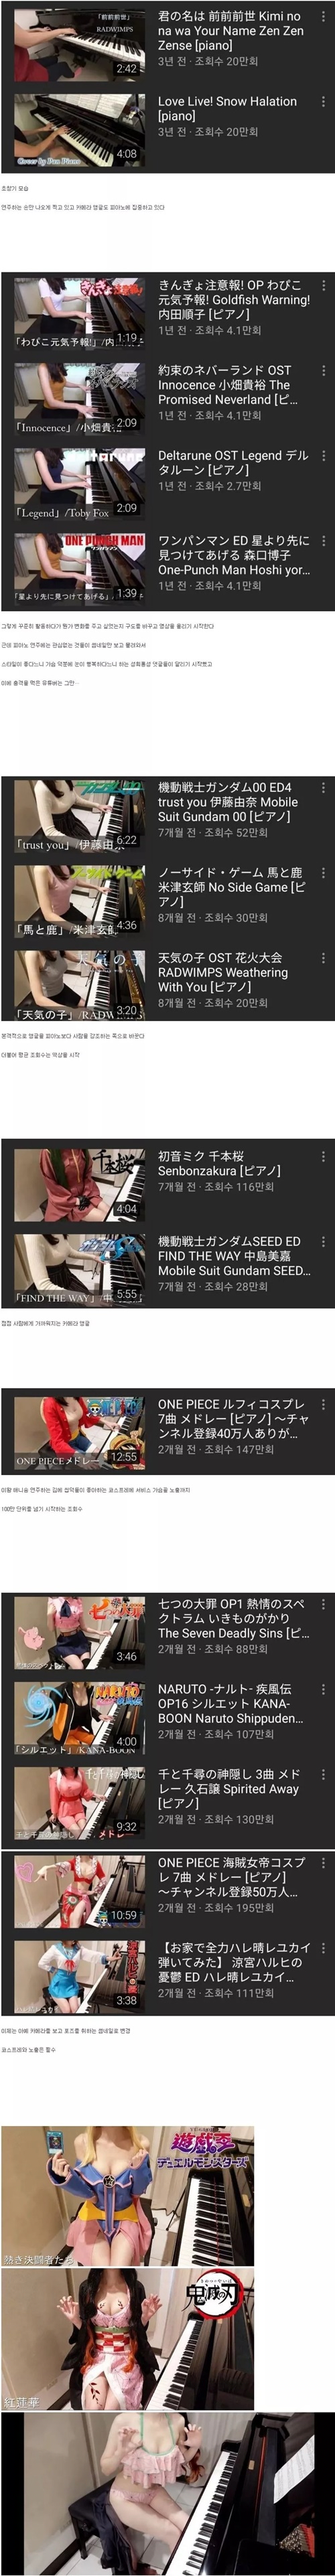 피아노 유튜버의 변화